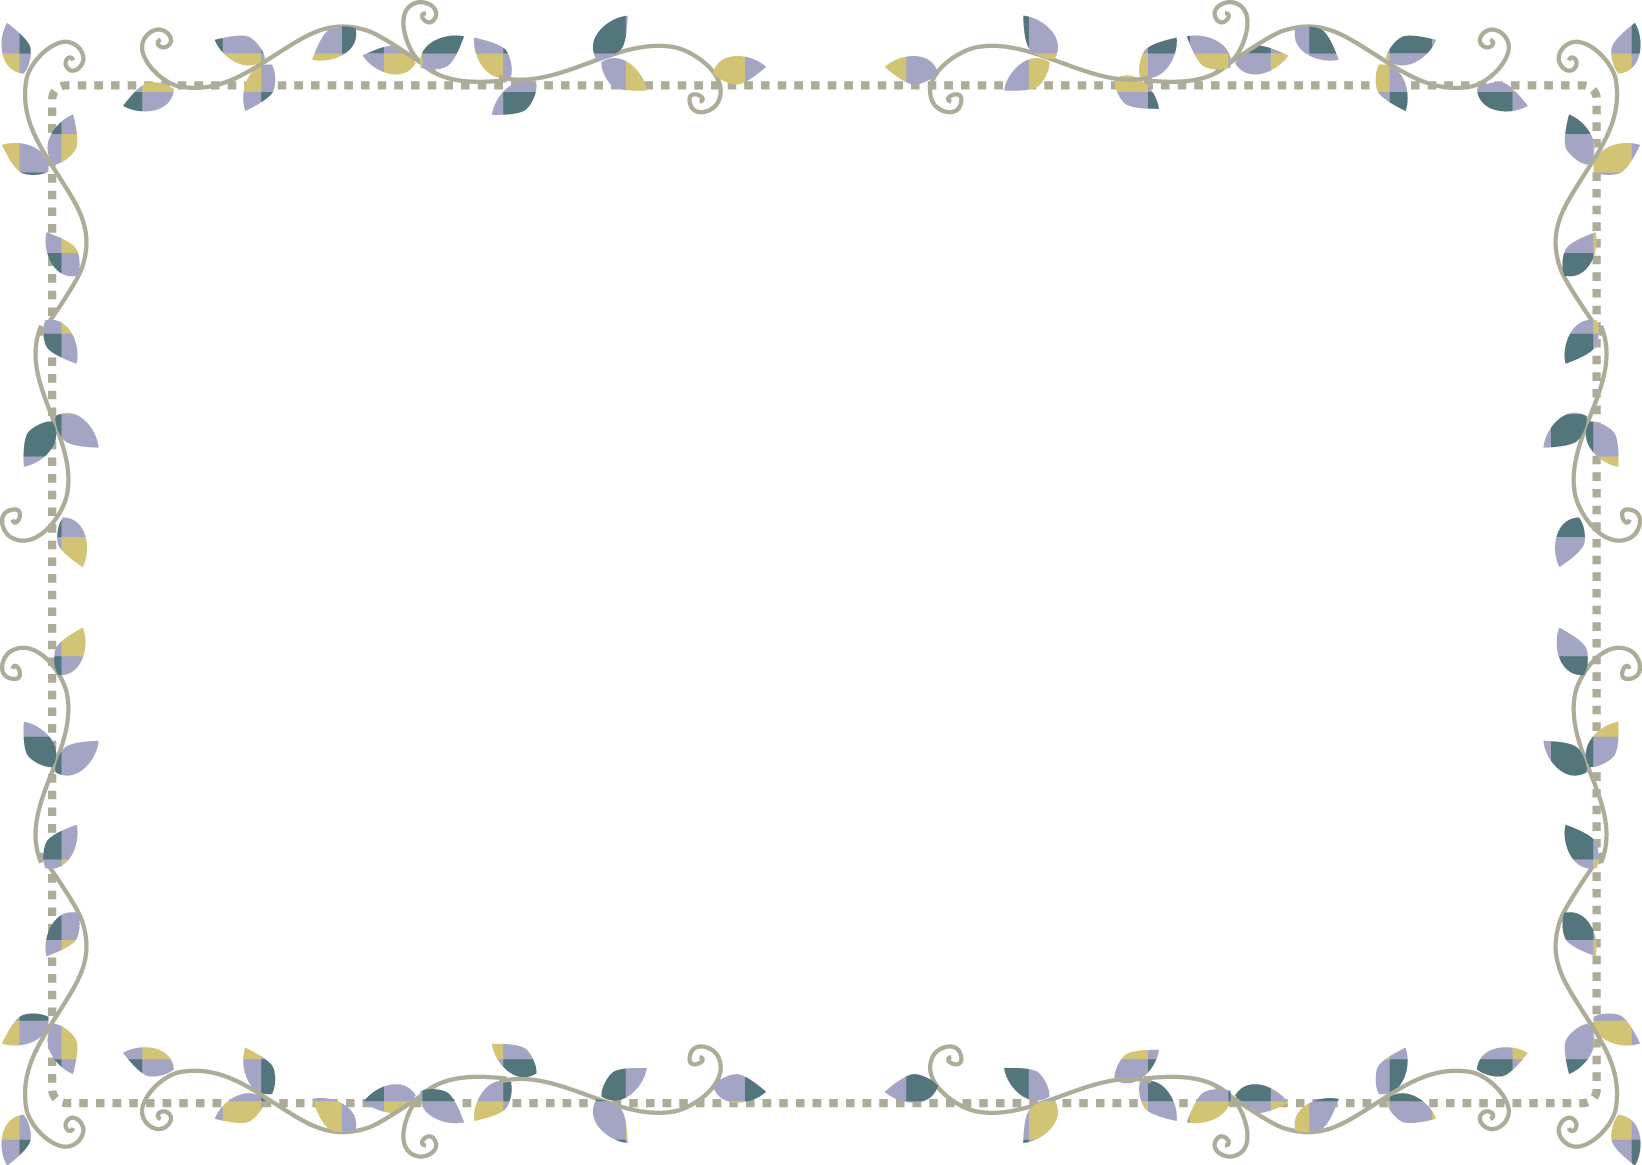 飾り枠-イラスト枠フレーム-シンプルな葉のデザイン